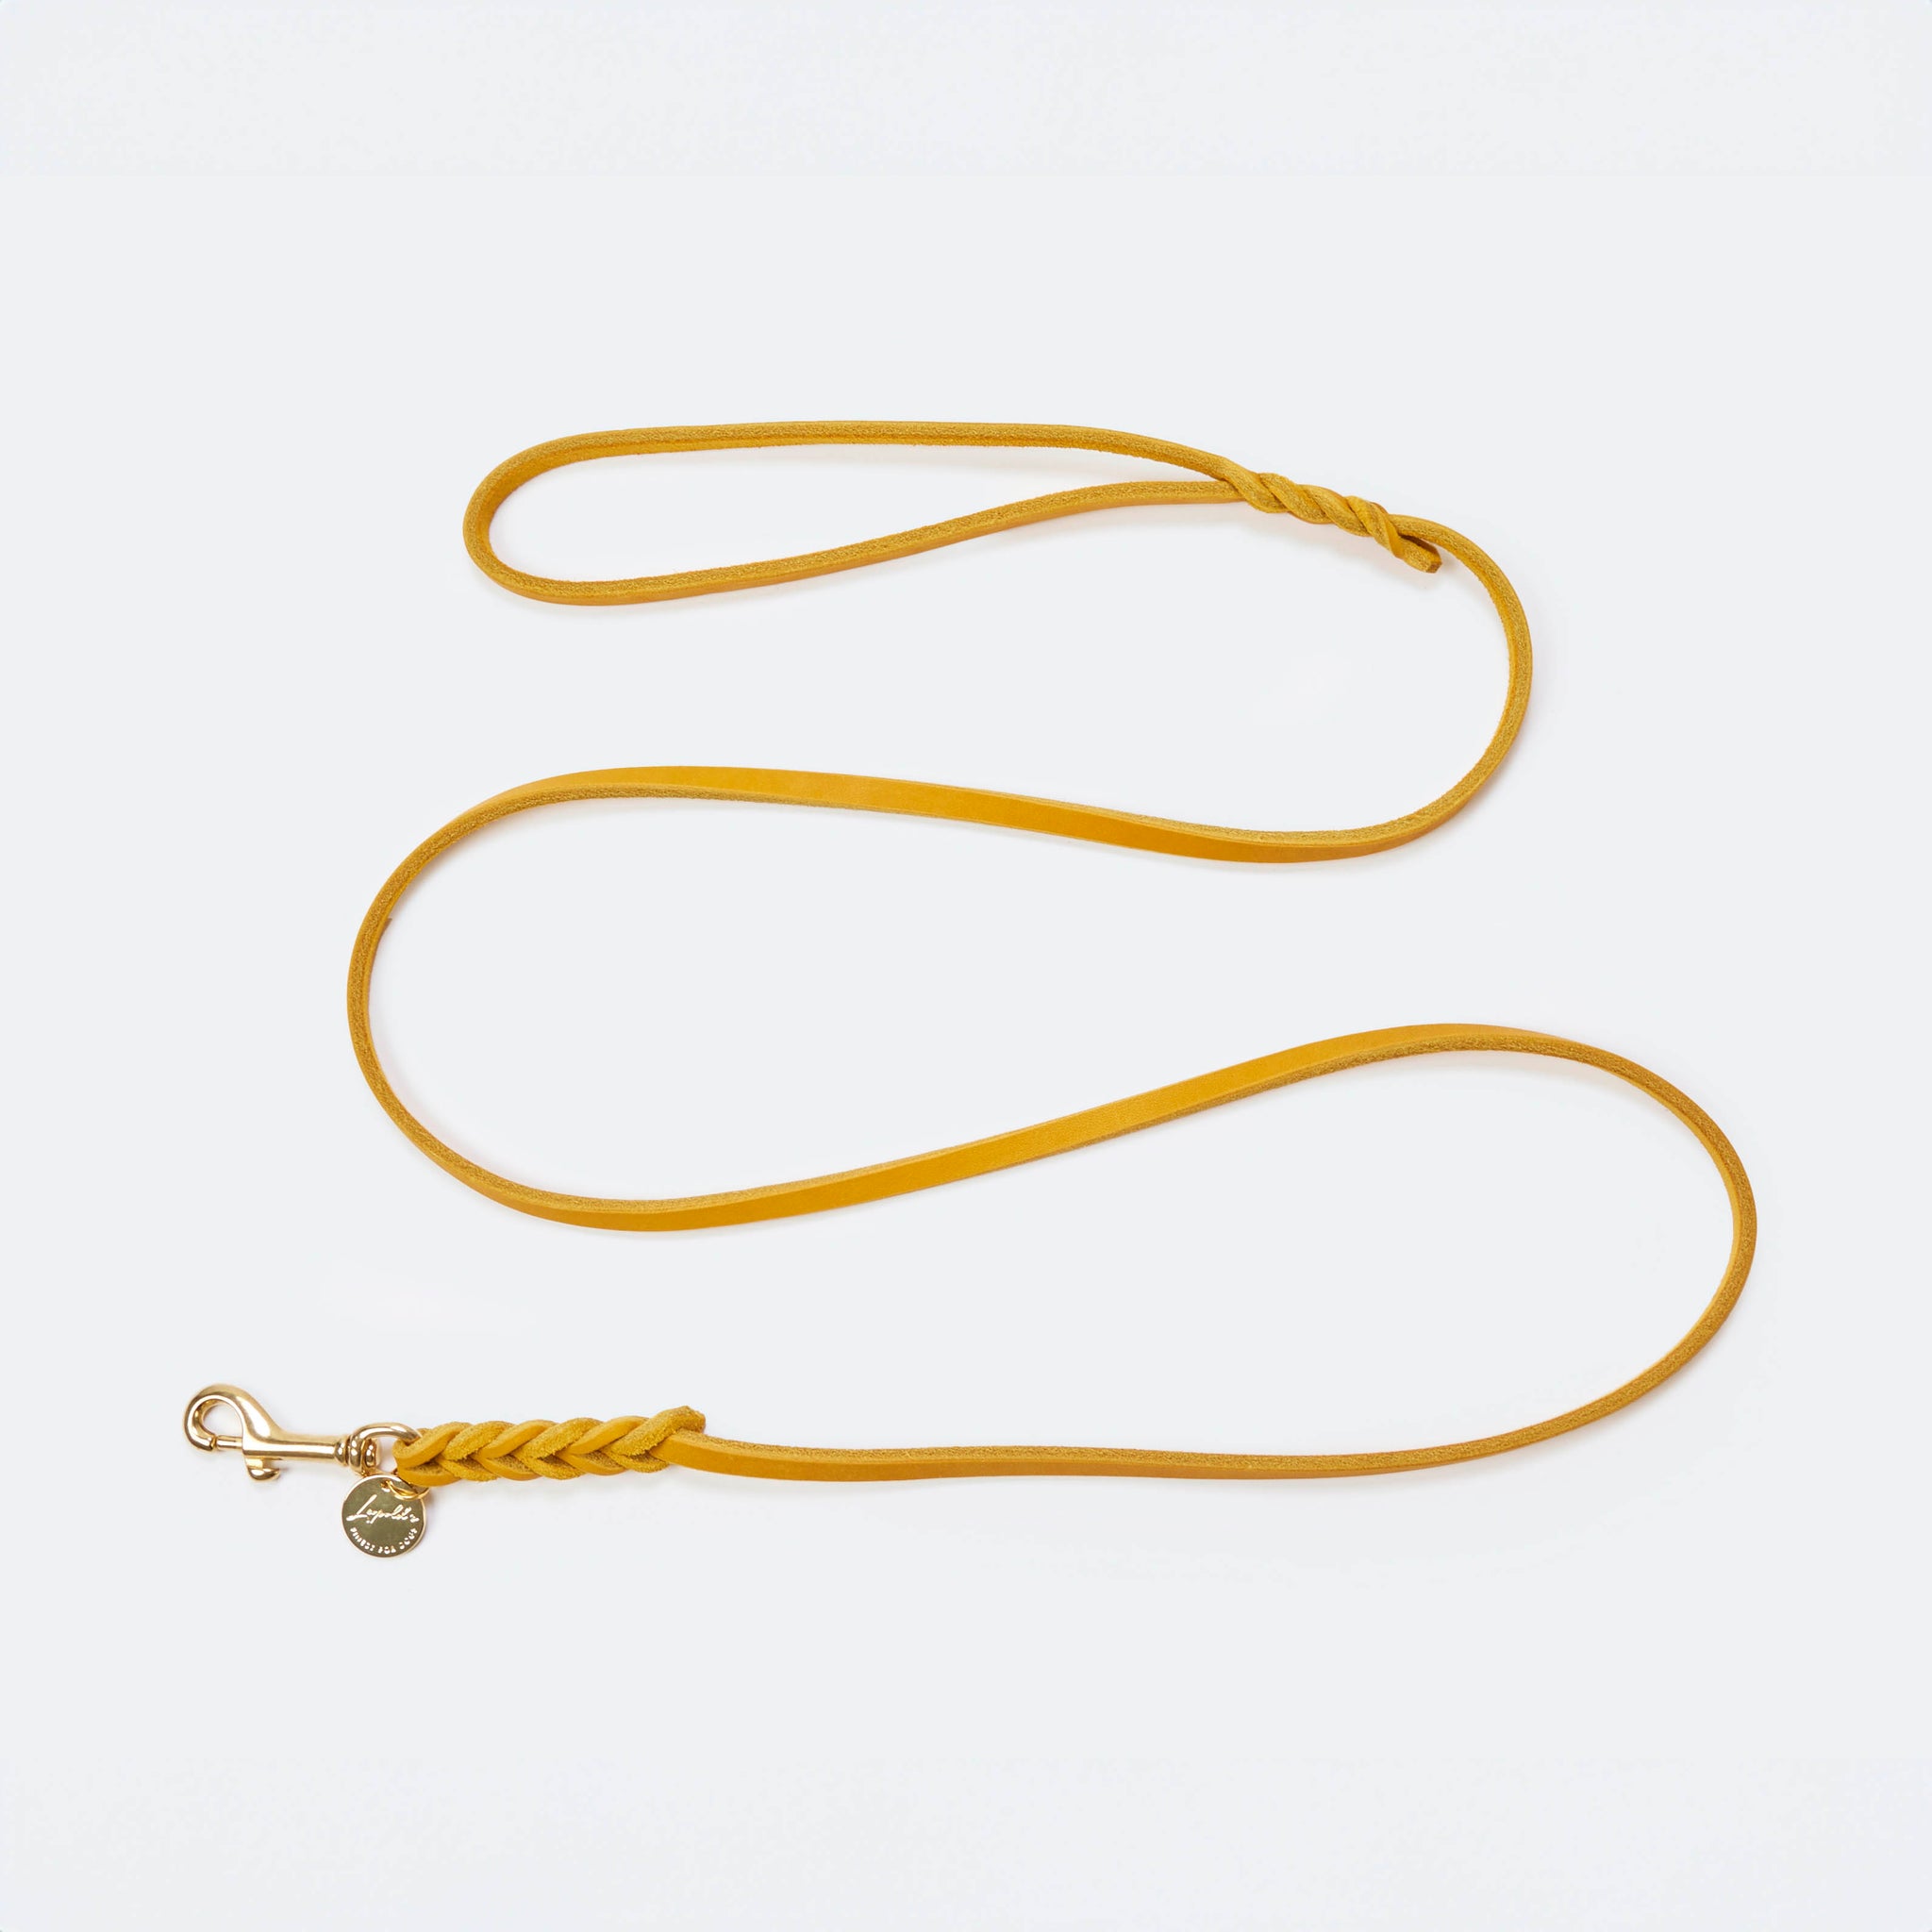 Leichte Hundeleine Fettleder Gelb-Gold Gelb-Gold   - von Leopold's kaufen bei leopolds-finest [Gelb-Gold]